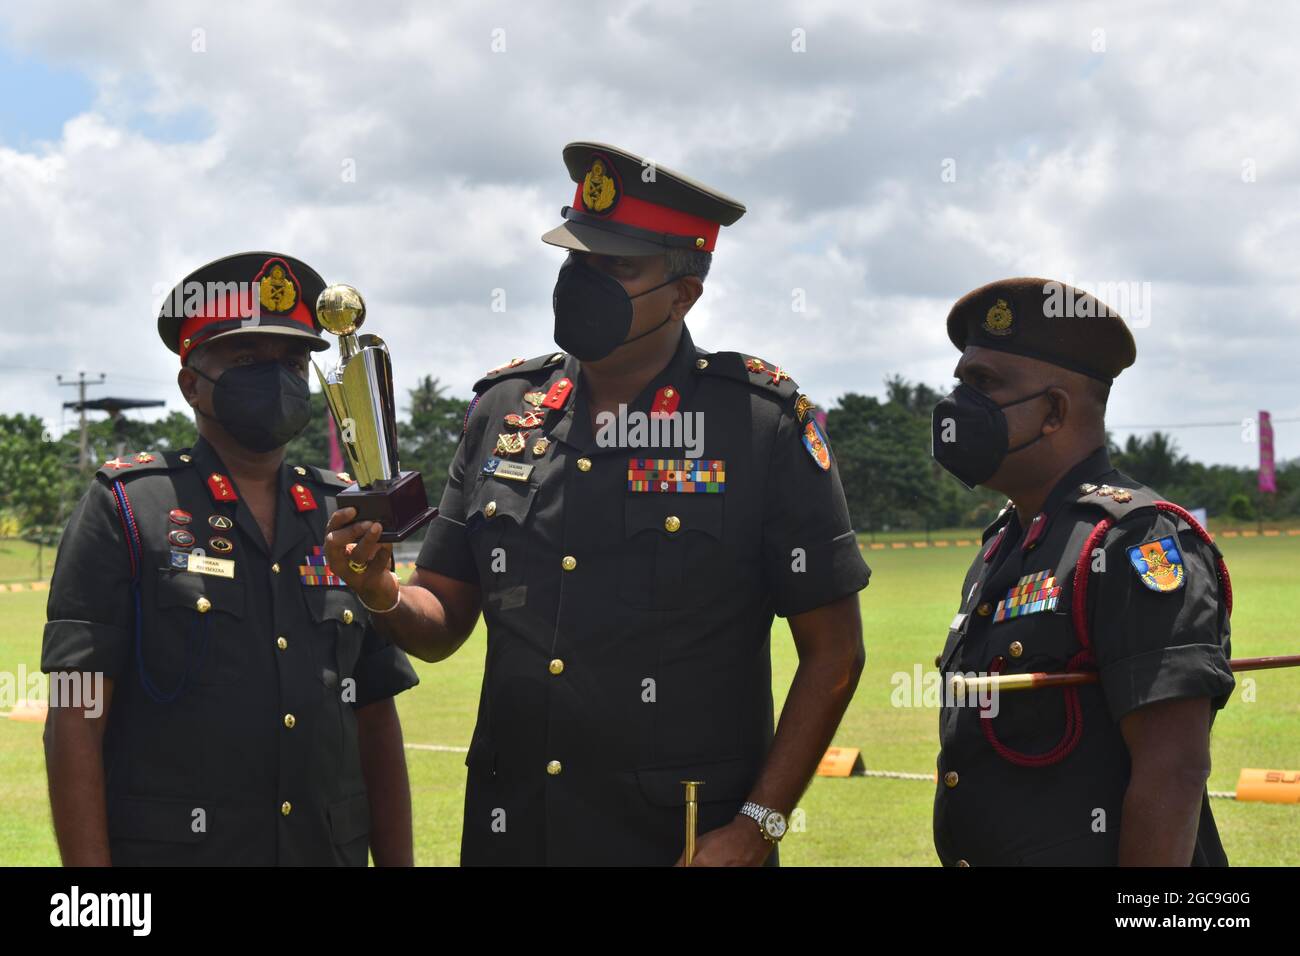 Le général de l’armée de Sri Lanka inspecte le trophée avant un événement sportif. Terrain de cricket de l'ordonnance de l'armée. Dombagode. Sri Lanka. Banque D'Images